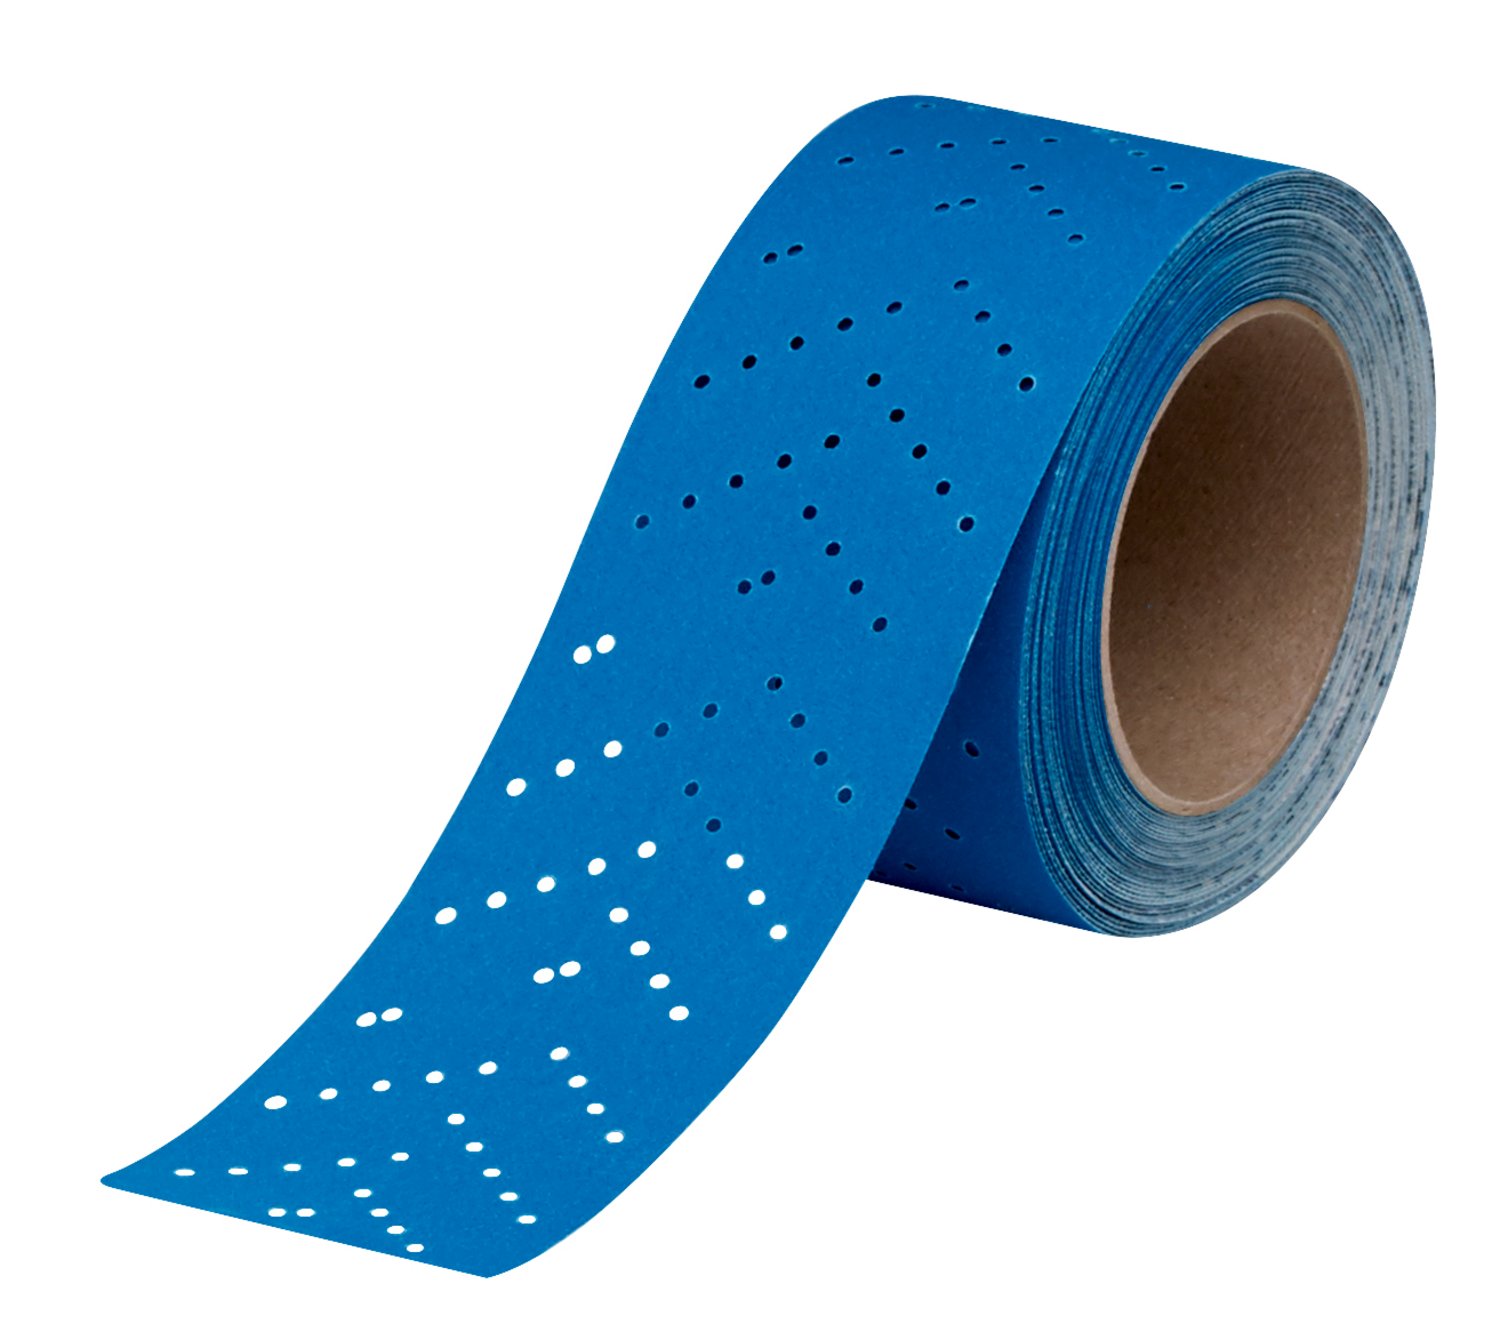 7100091348 - 3M Hookit Blue Abrasive Sheet Roll Multi-hole, 36198, 600, 2.75 in x
13 y, 4 cartons per case